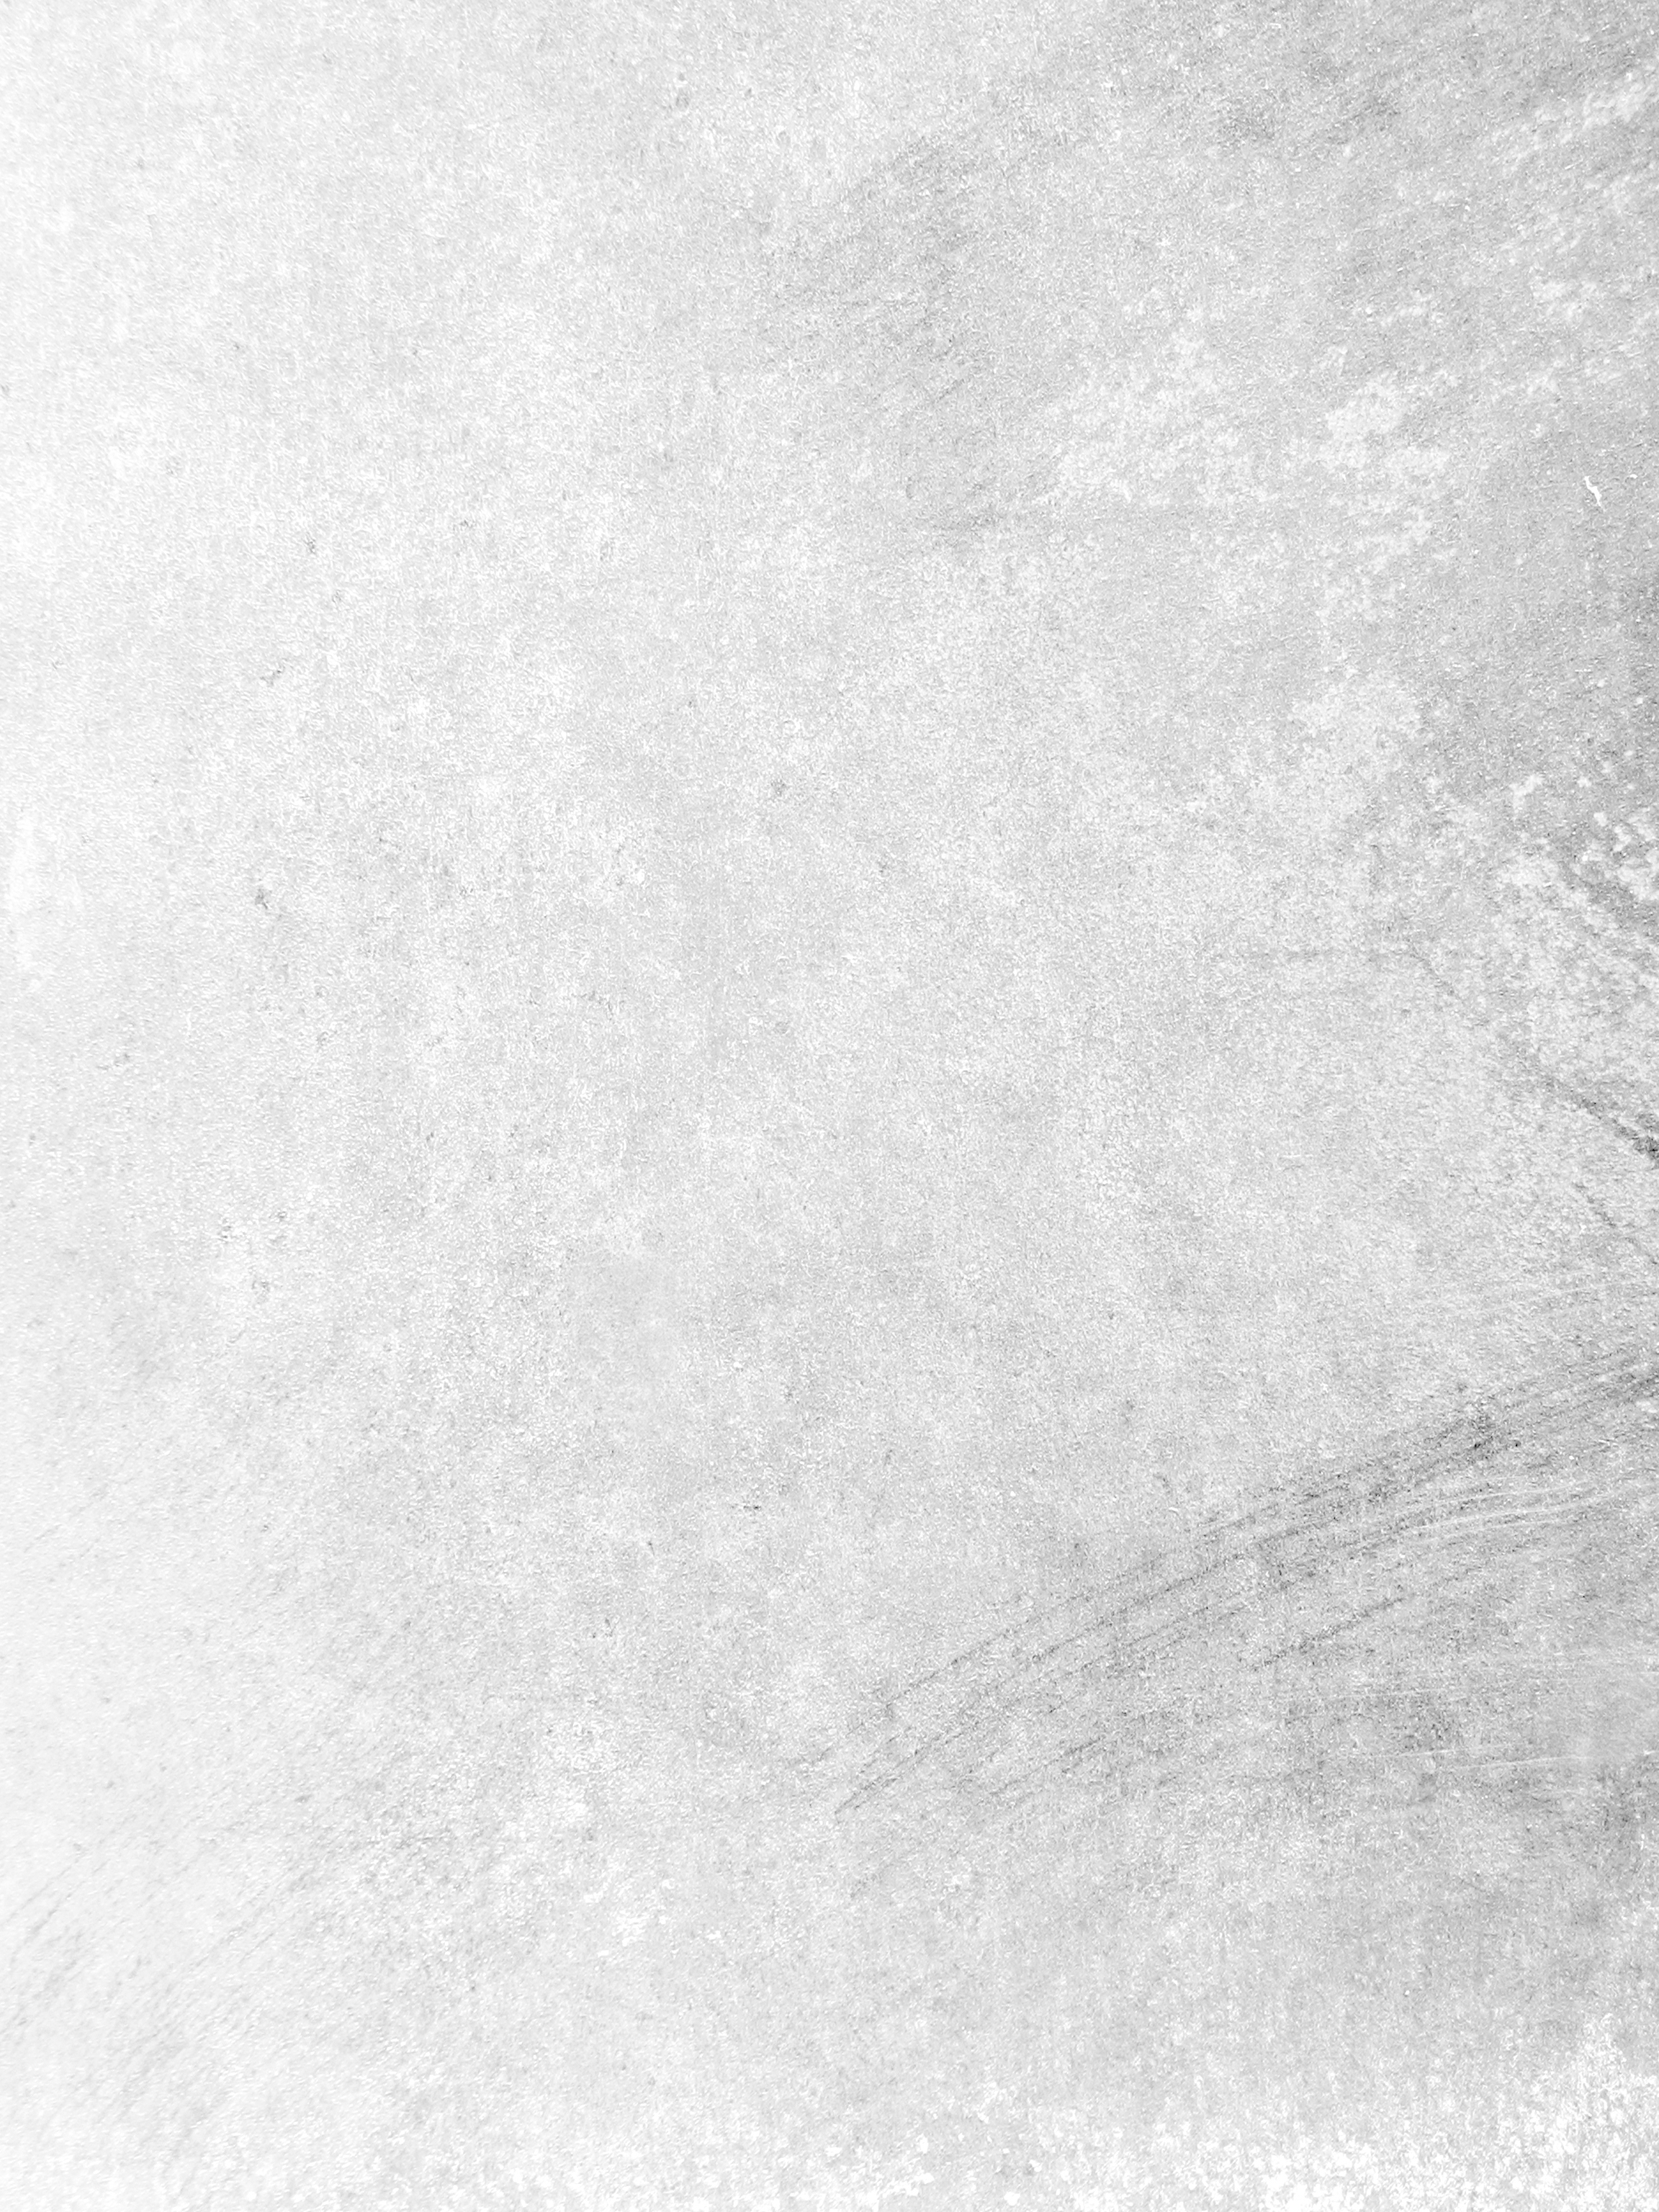 Free photo White  Grunge Background  Texture  Worn 